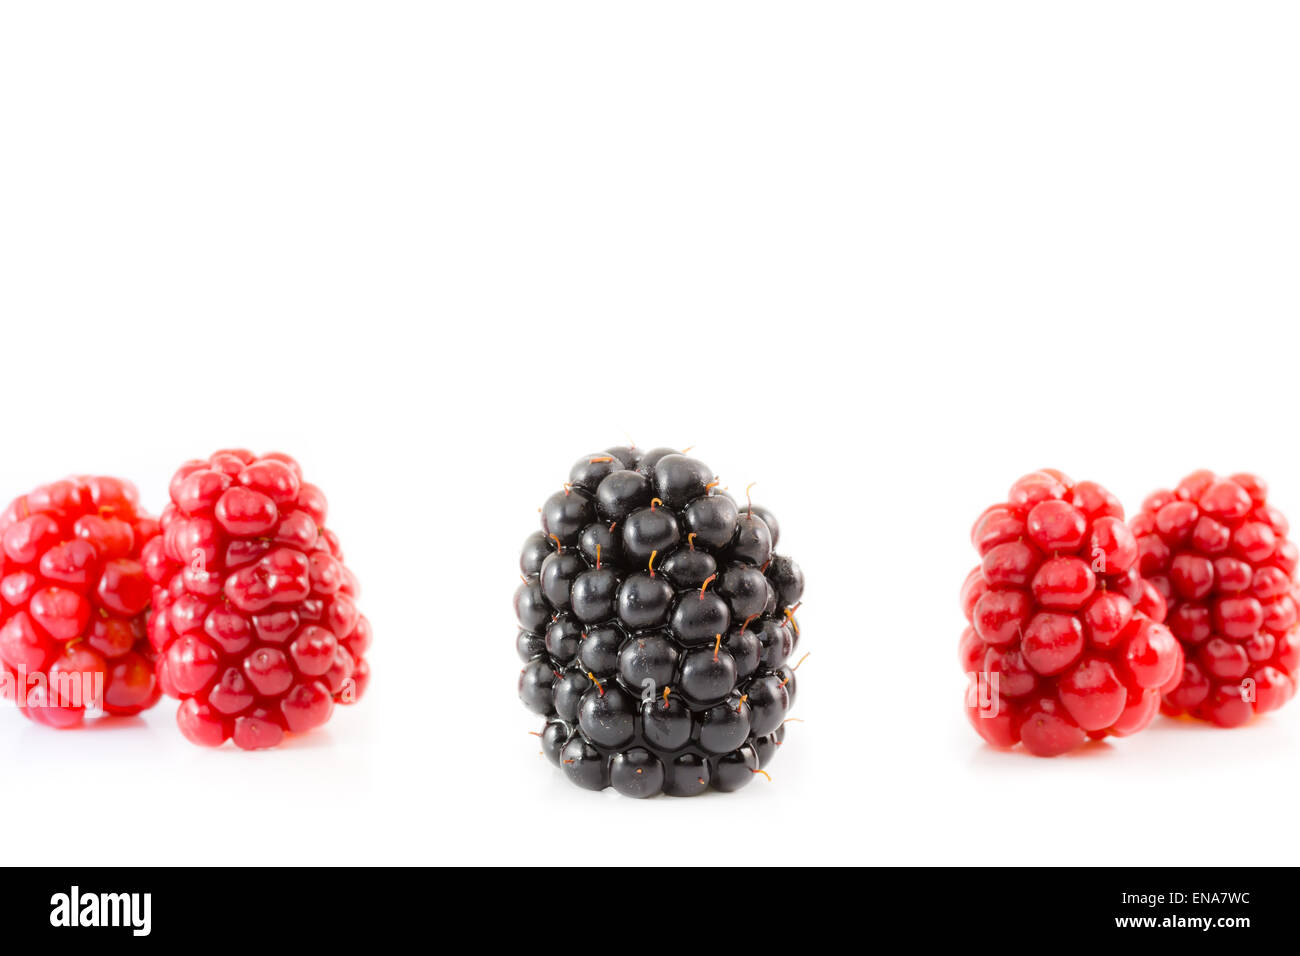 Reife und unreife Blackberry. Früchte in einer Reihe. Konzept des Andersseins. Stockfoto